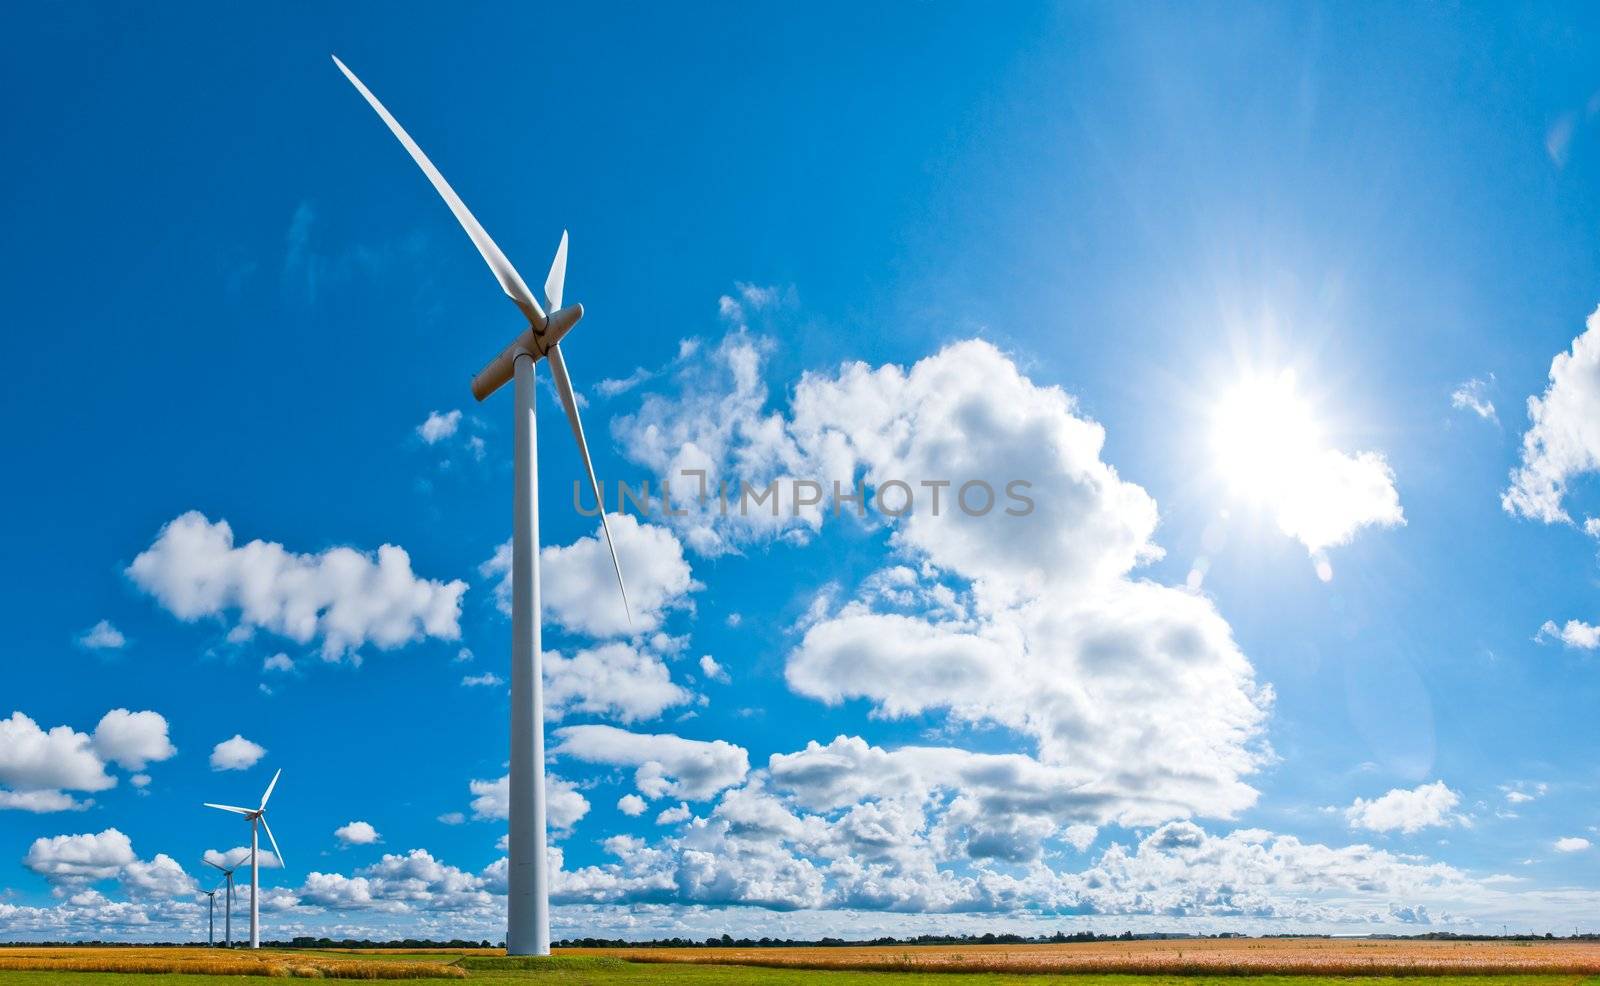 wind turbines in countryside by filmstroem